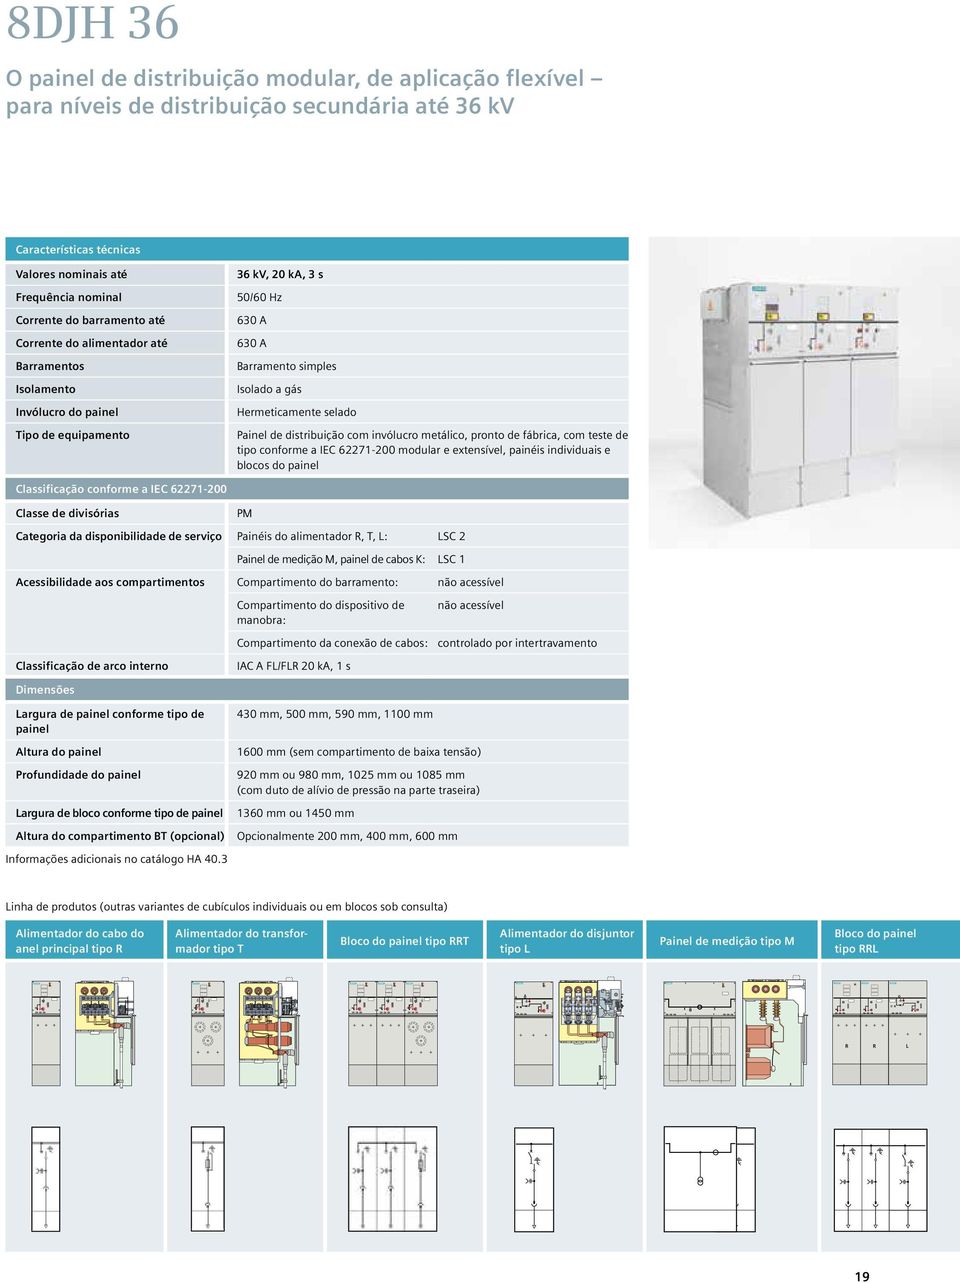 Painel de distribuição com invólucro metálico, pronto de fábrica, com teste de tipo conforme a IEC 62271-200 modular e extensível, painéis individuais e blocos do painel Classificação conforme a IEC